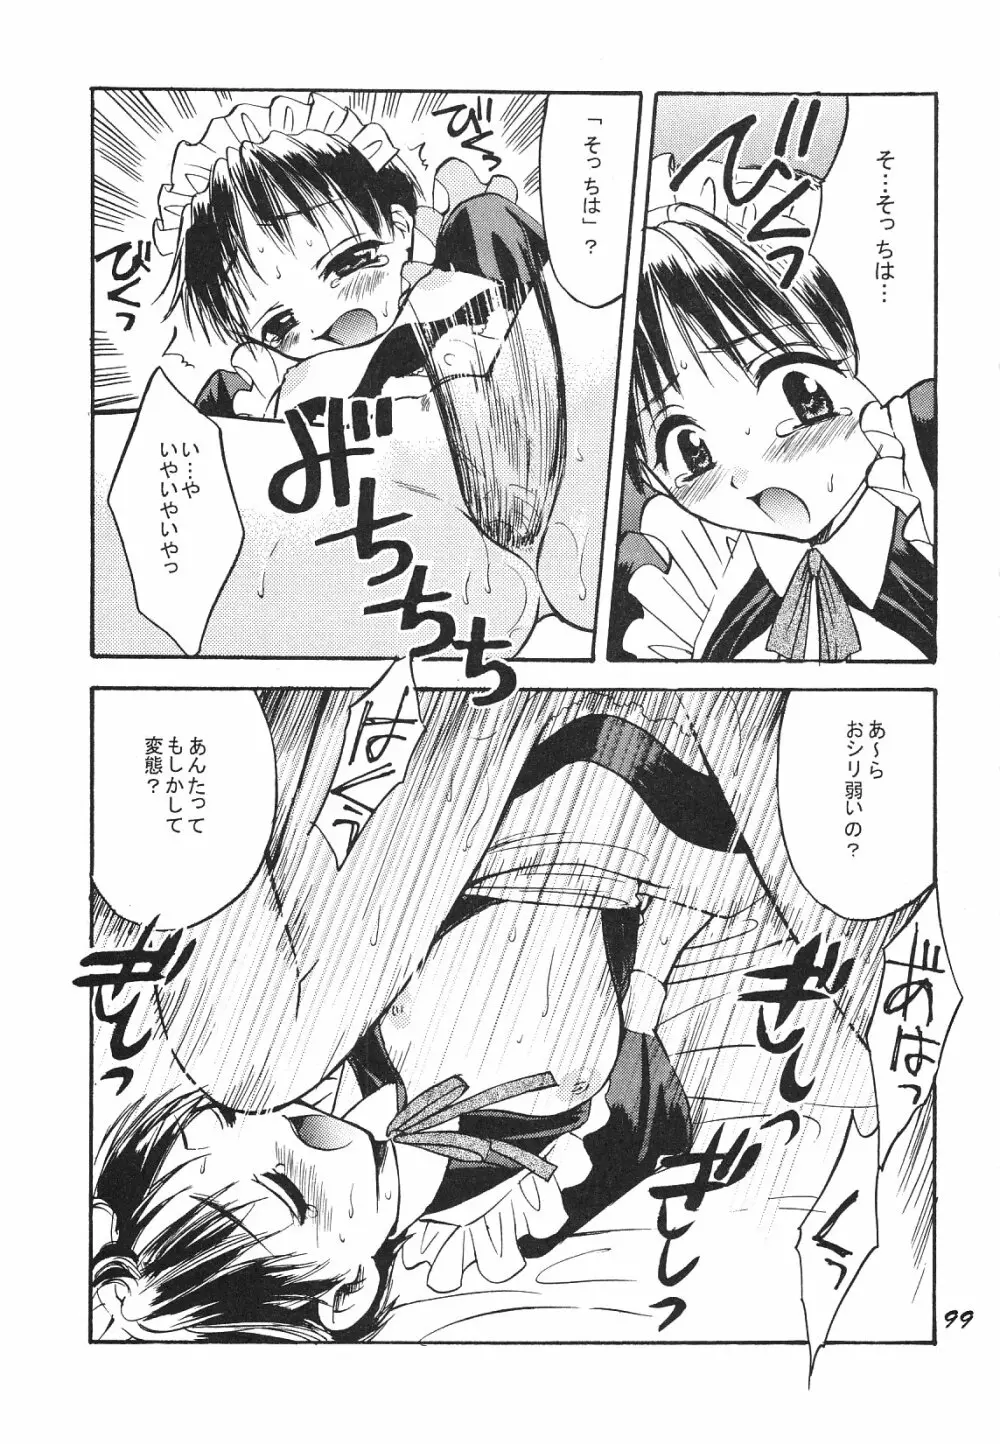 Maniac Juice 女シンジ再録集 '96-'99 - page99